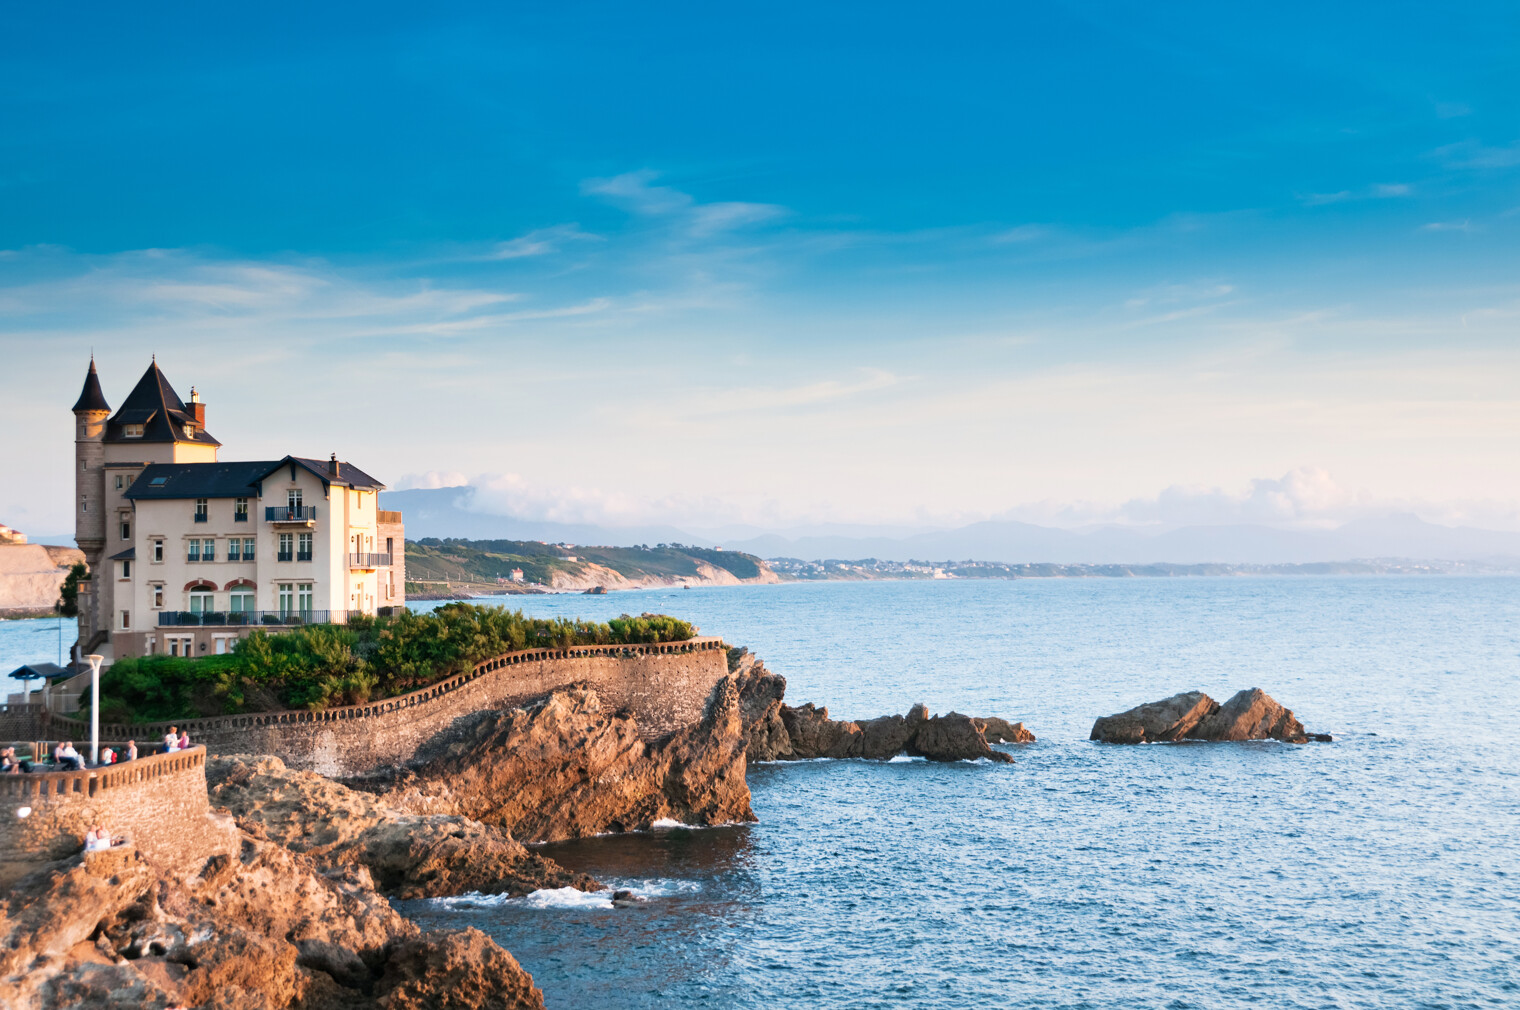 Vue sur l'océan et la ville de Biarritz au Pays basque